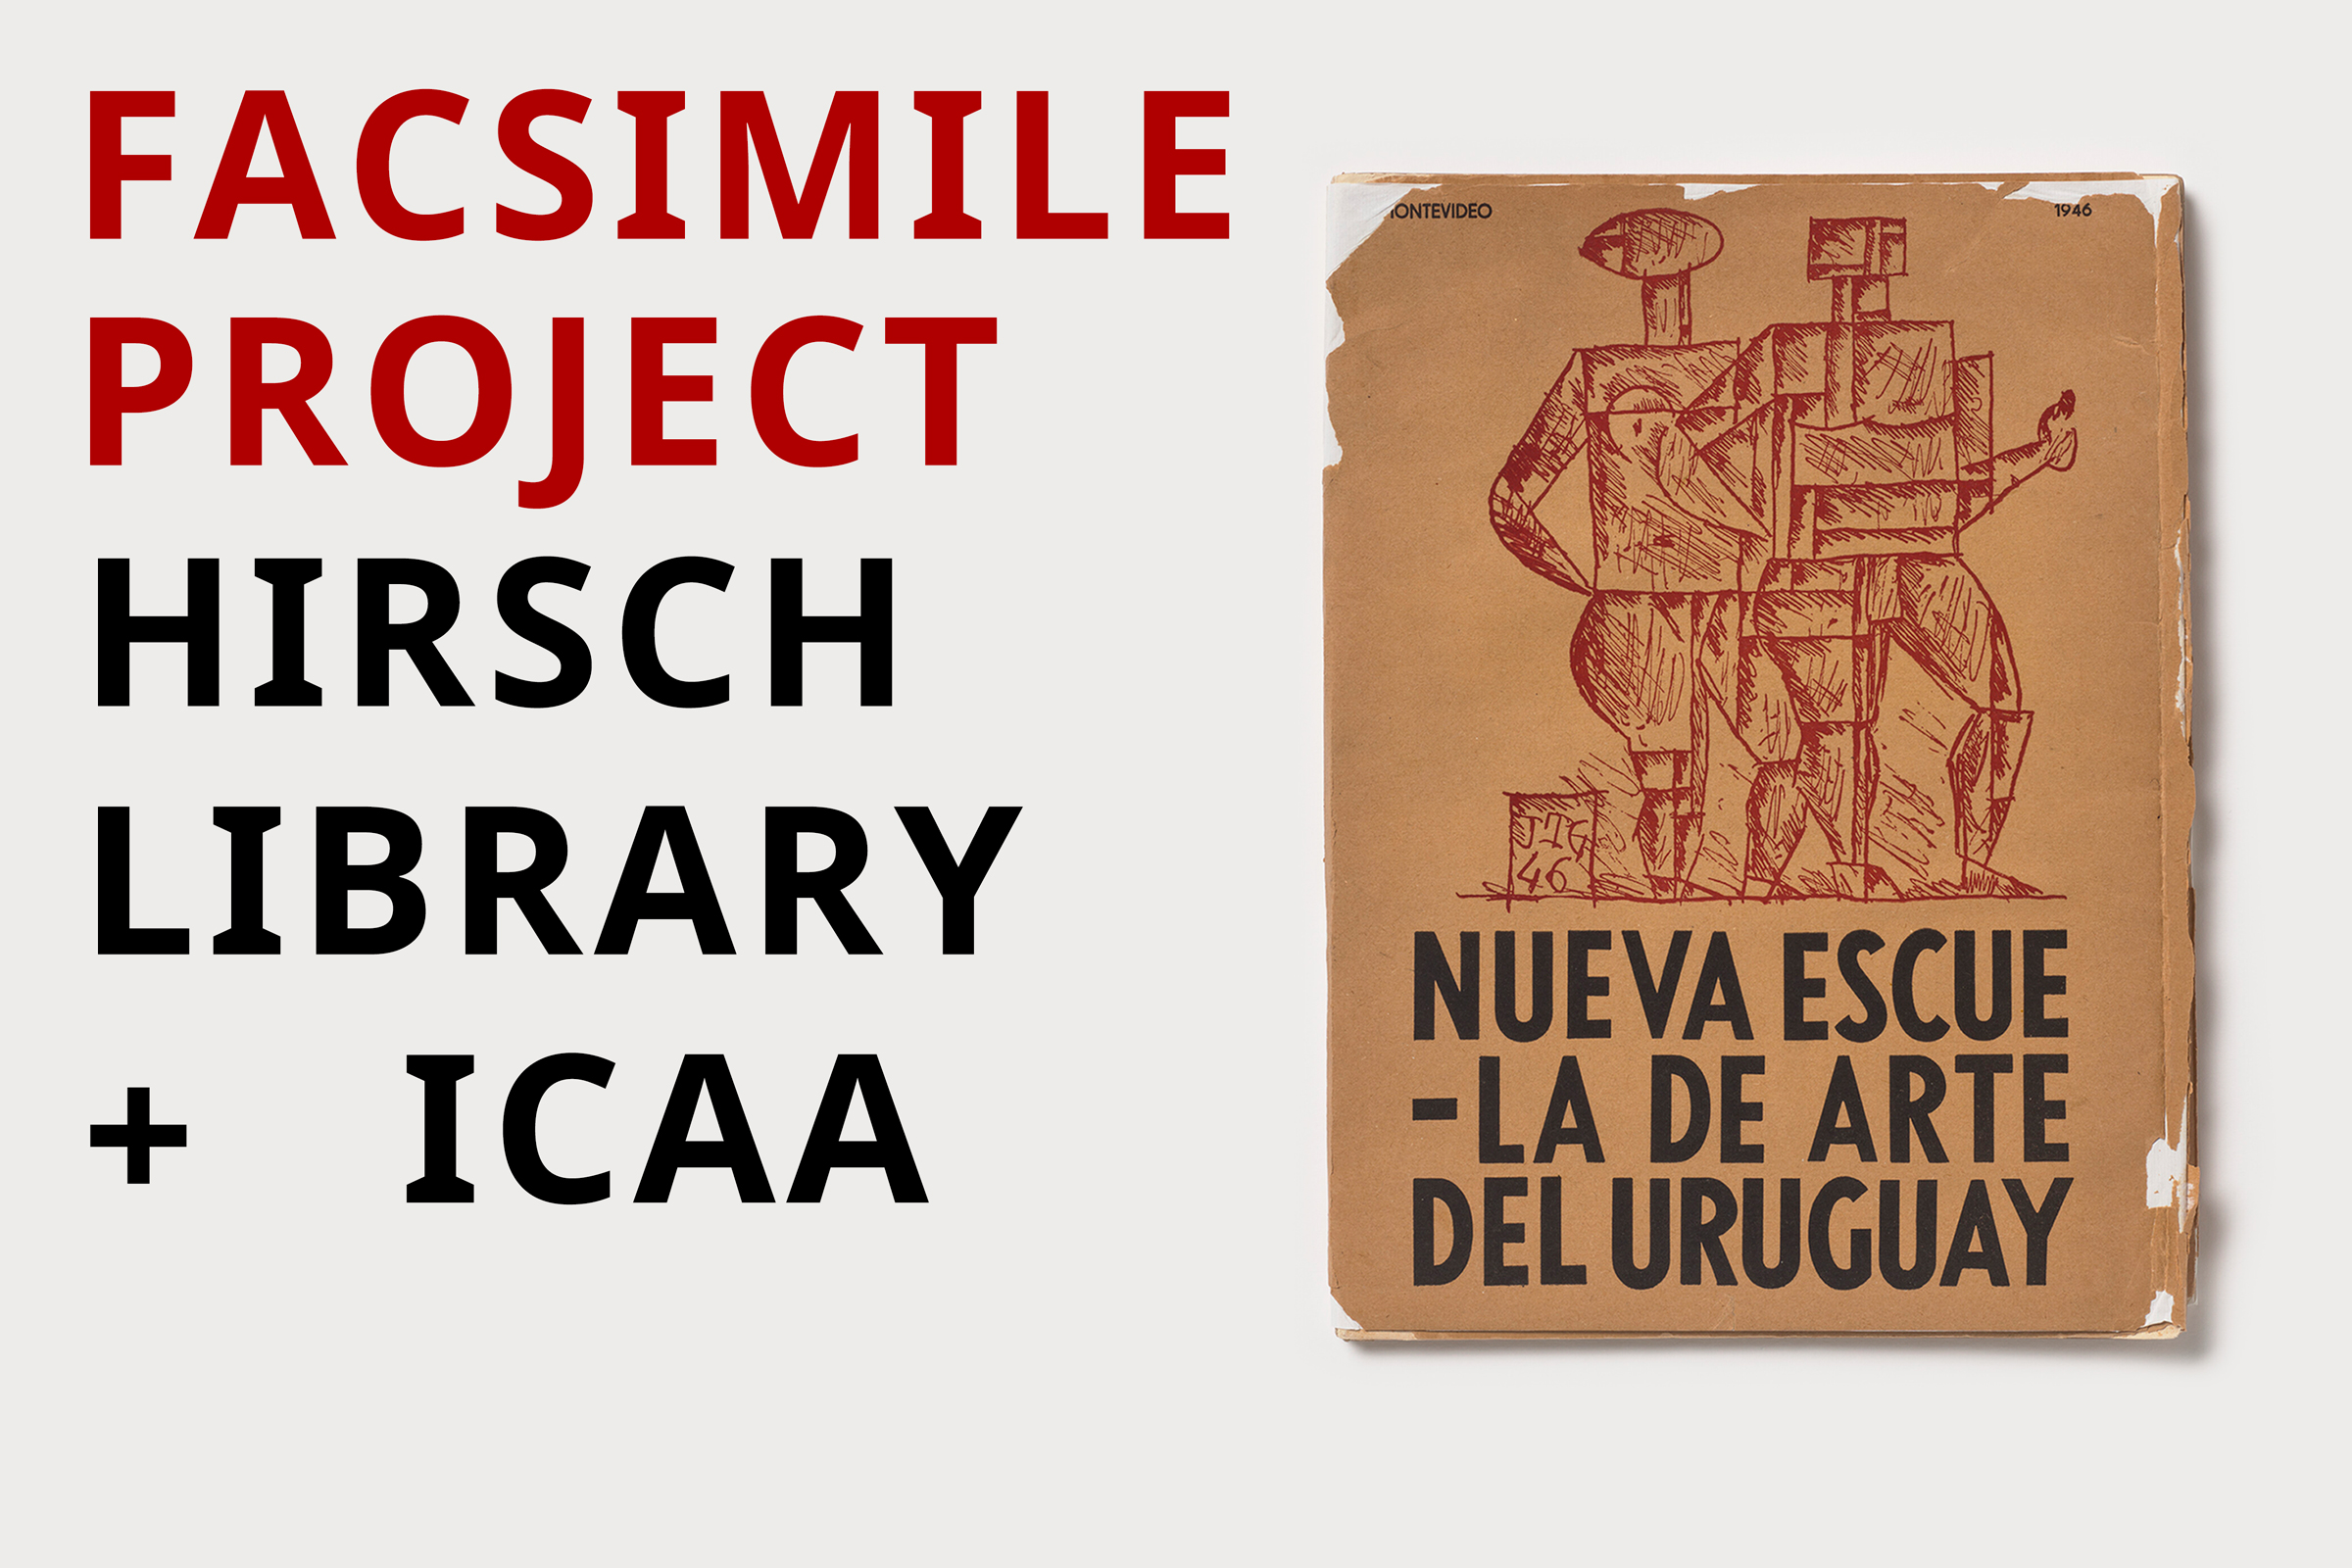 <p><strong><em>Papelitos:&nbsp;</em>Proyecto Facsimilar ICAA- Biblioteca Hirsch:&nbsp;Libros Raros Latinoamericanos, Publicaciones y&nbsp;Miscel&aacute;nea en el Edificio&nbsp;Nancy y Rich Kinder</strong></p>
